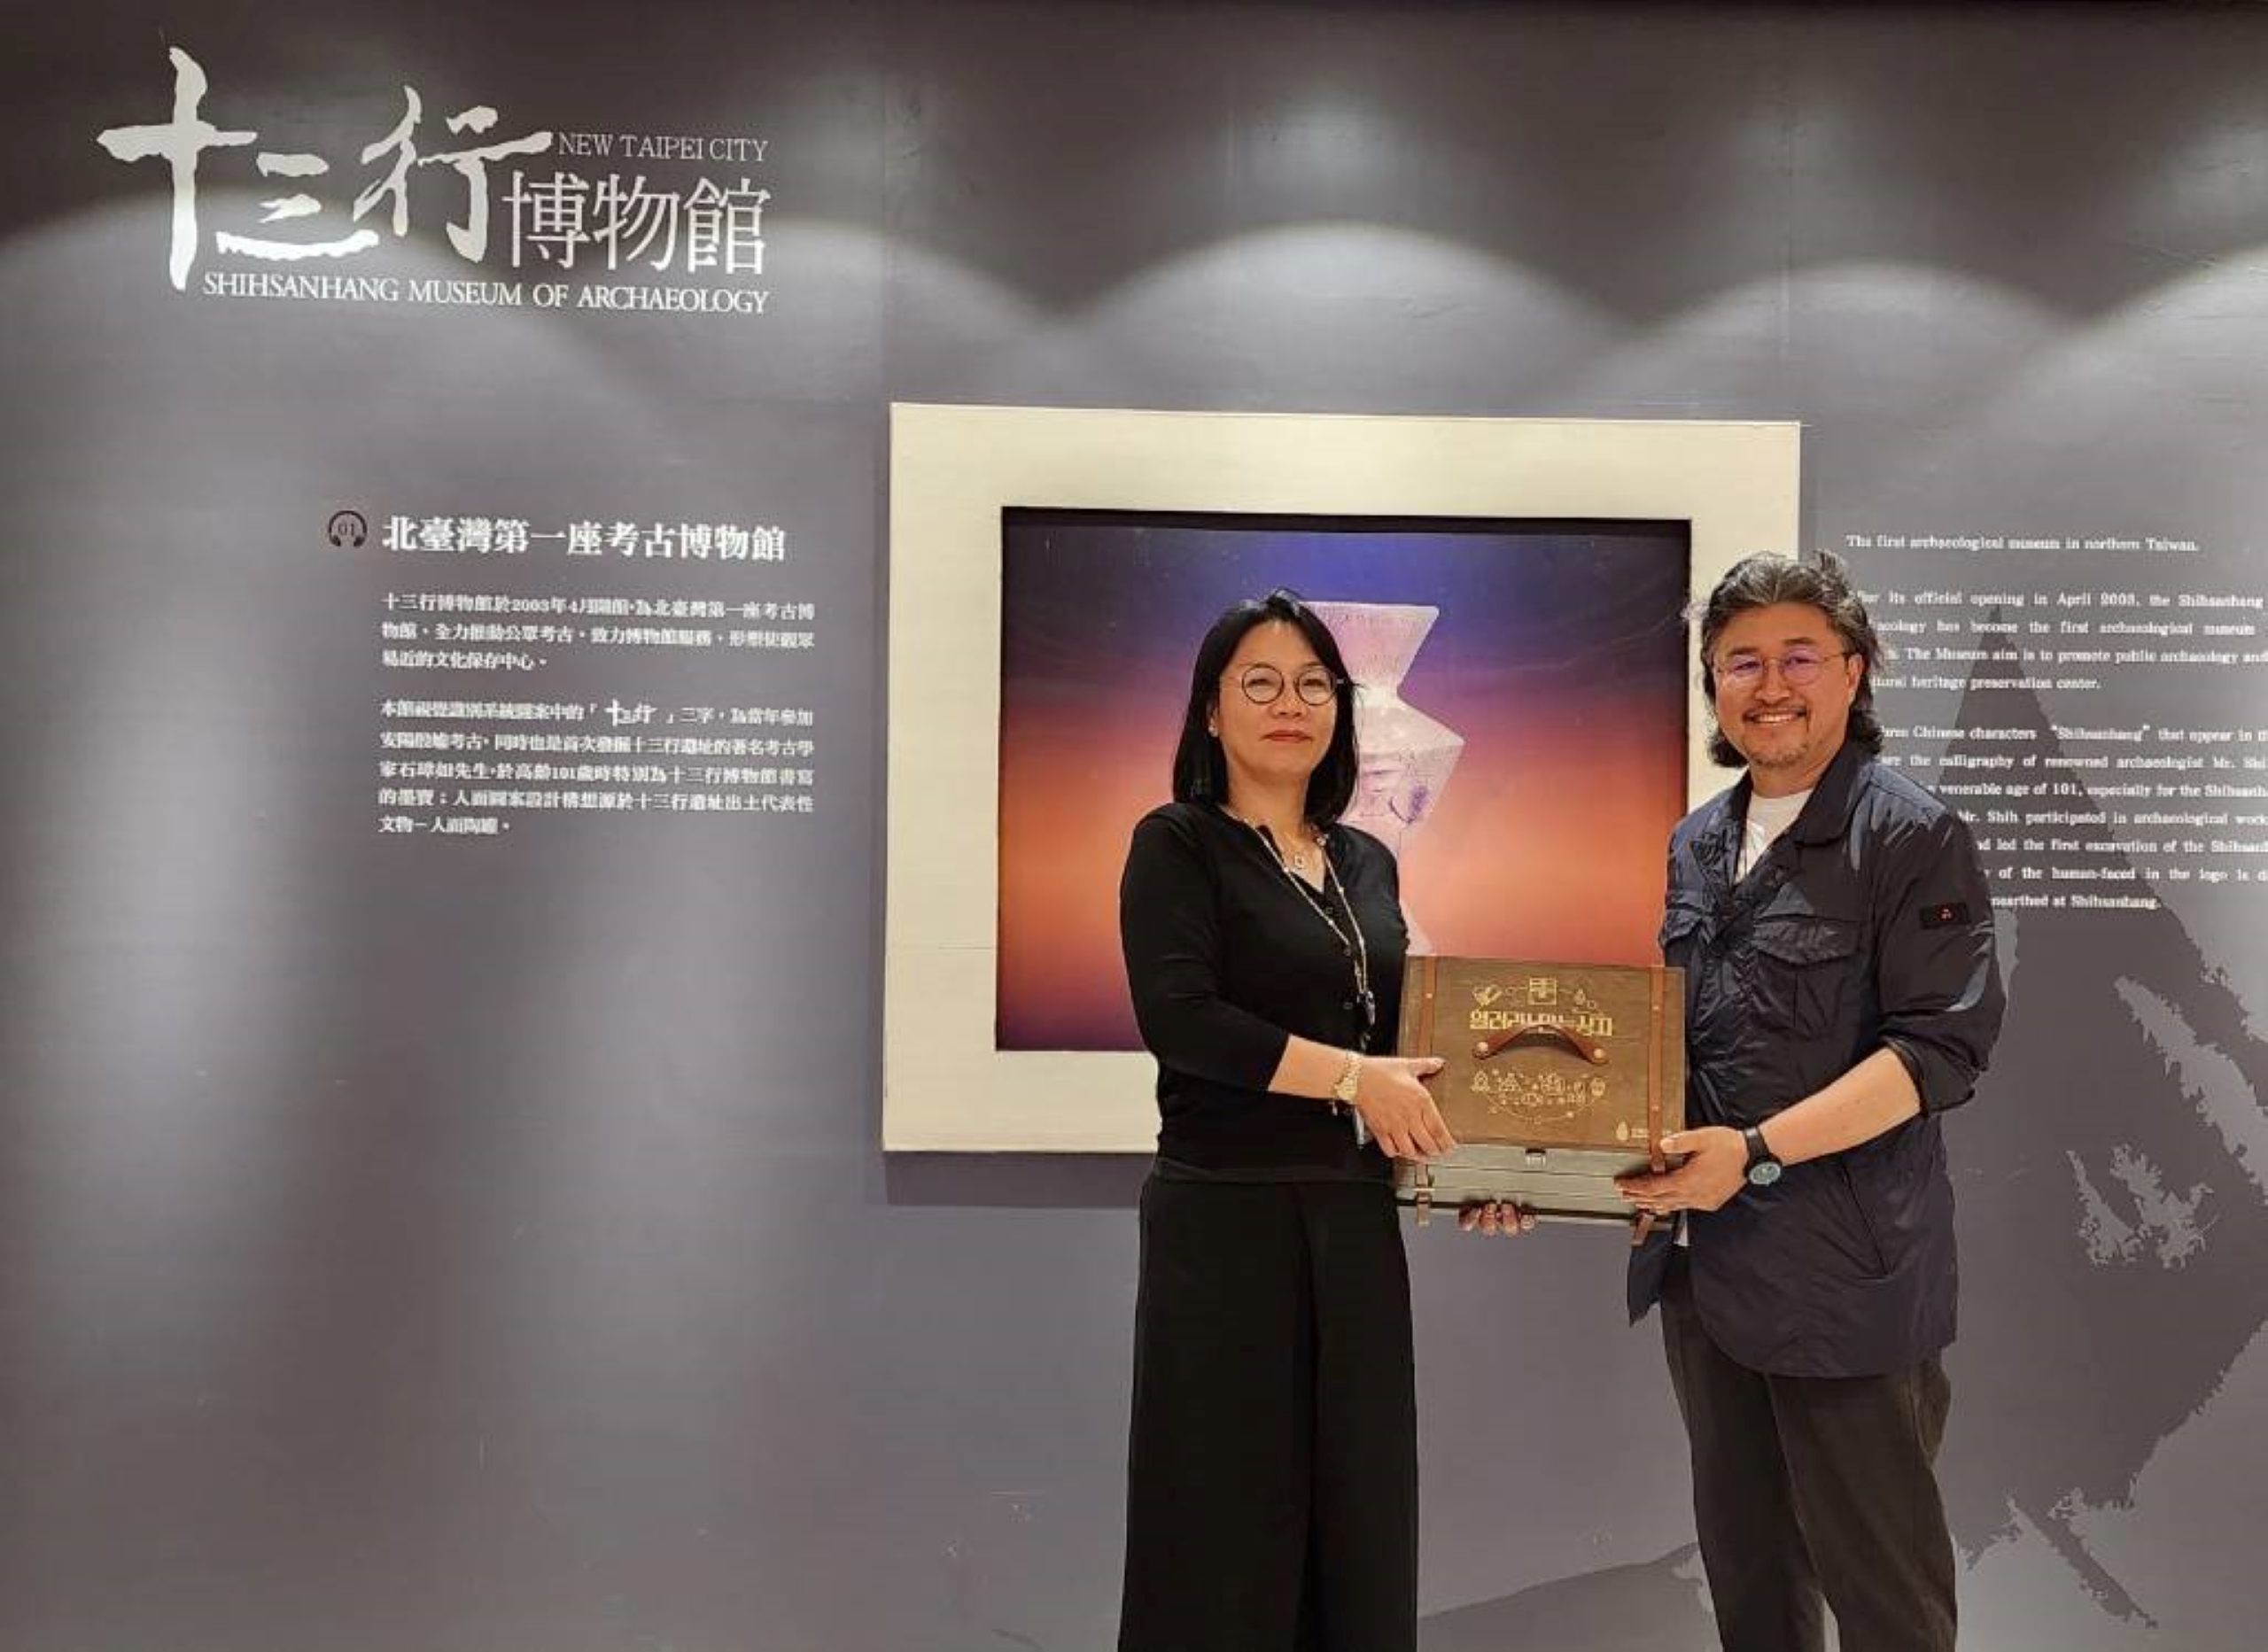 韓國全谷史前博物館特別精心製作史前石器複製品教具組贈予臺灣民眾免費體驗